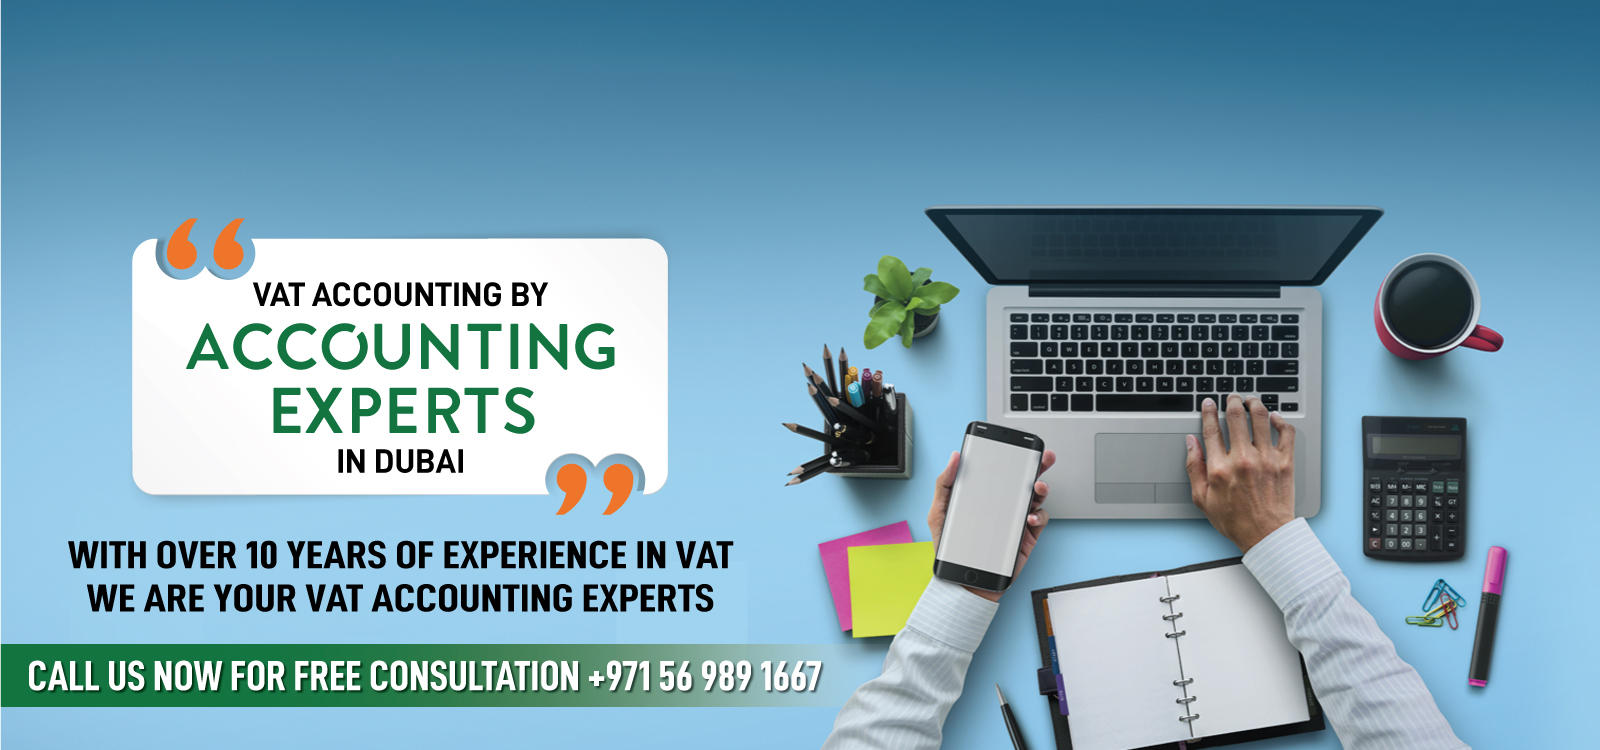 VAT Accounting expert in UAE